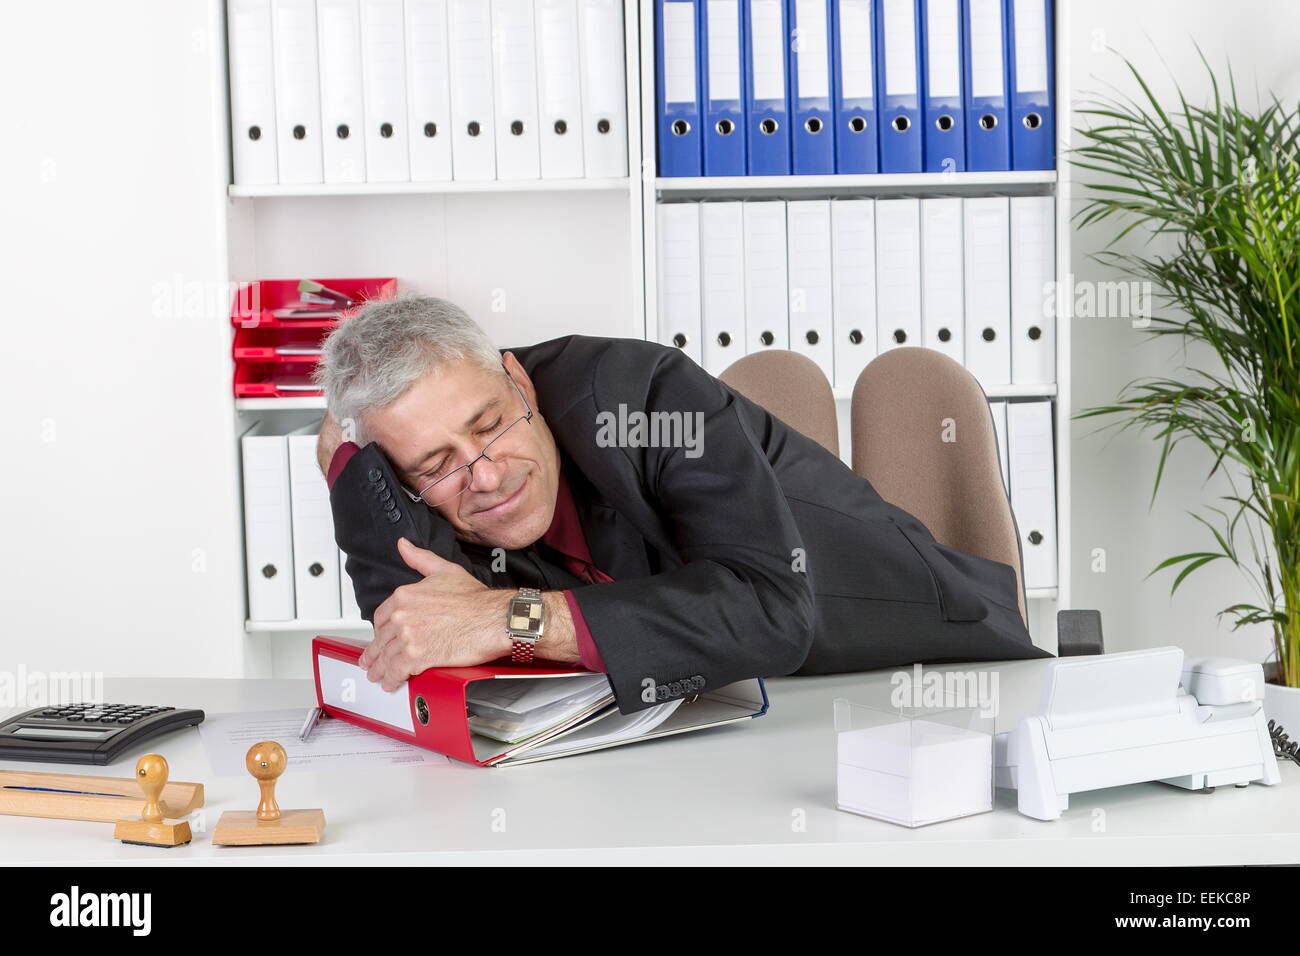 Mann mittleren altera sitzt im Büro, liegt auf Akternordnern und schläft, uomo di mezza età, seduto nel suo ufficio, giacente su offic Foto Stock